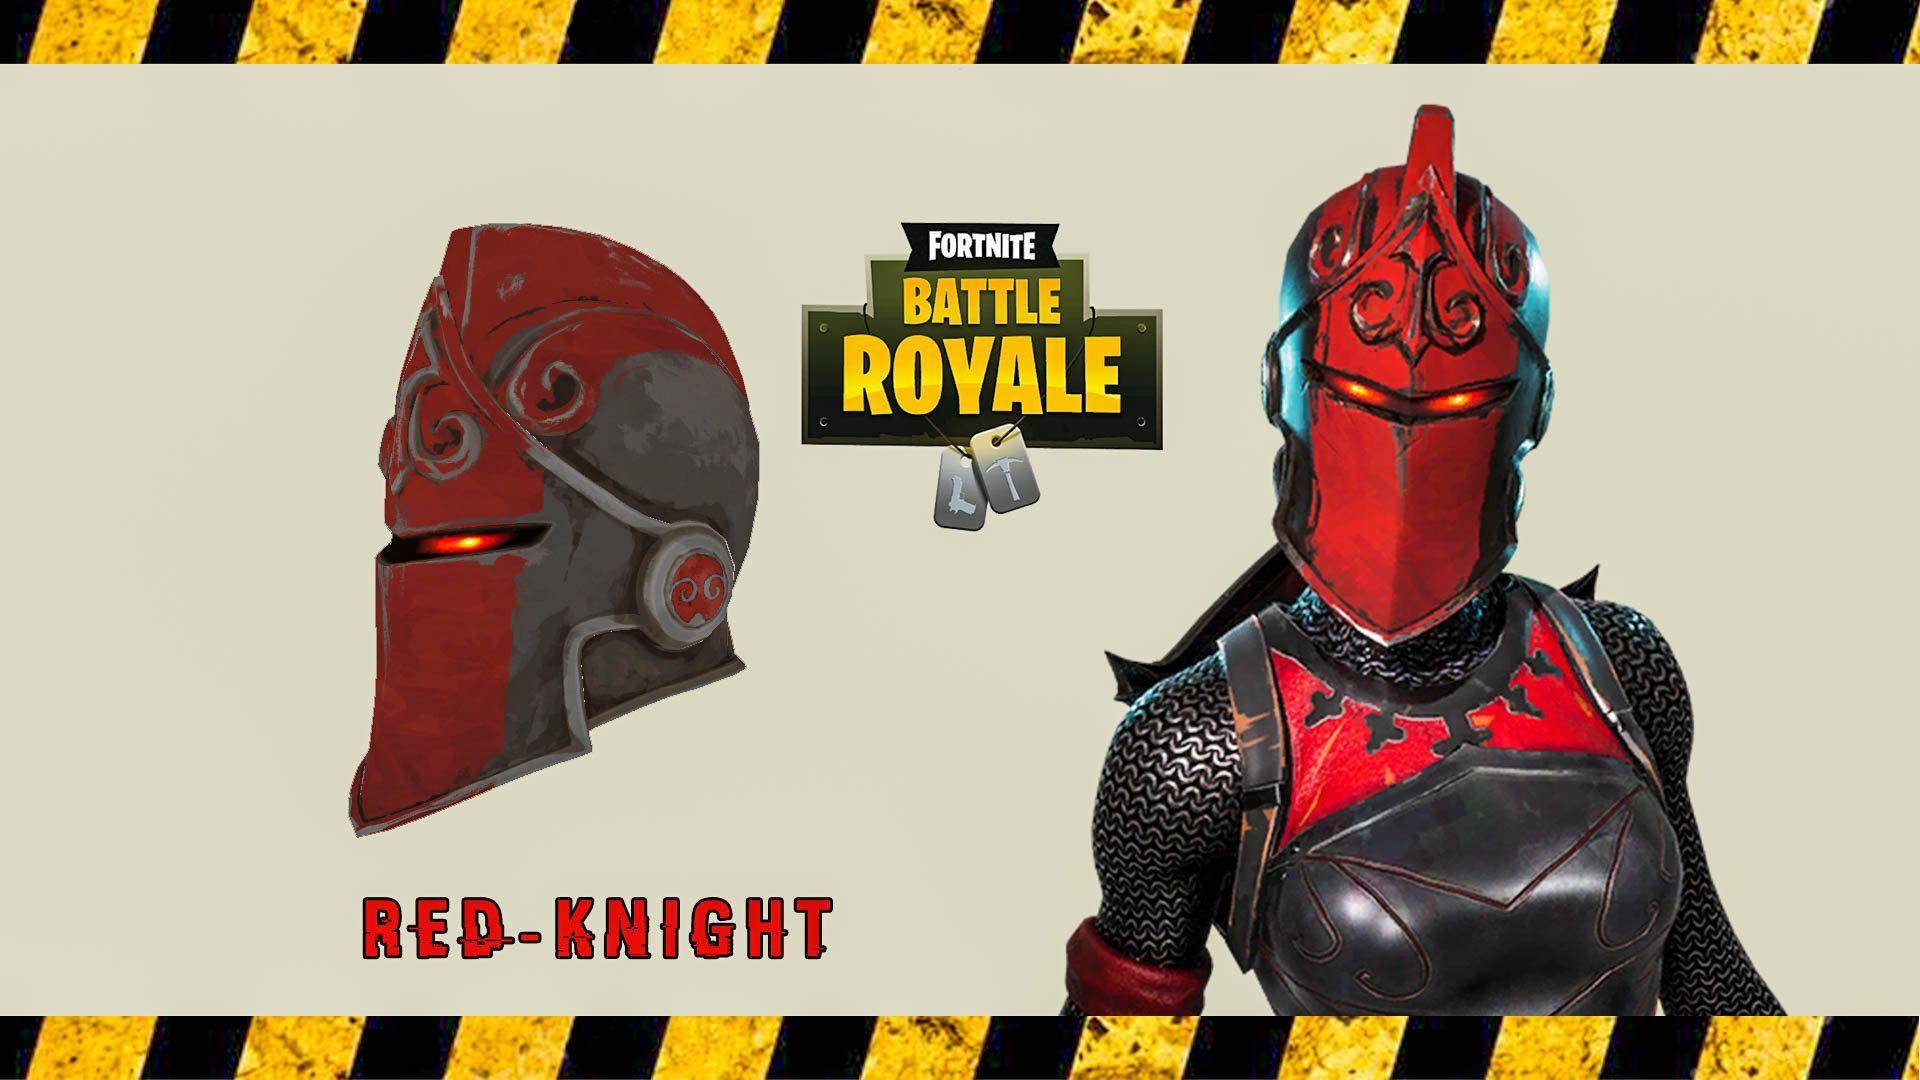 Red Knight Helmet Knight Helmet Patterns- Red